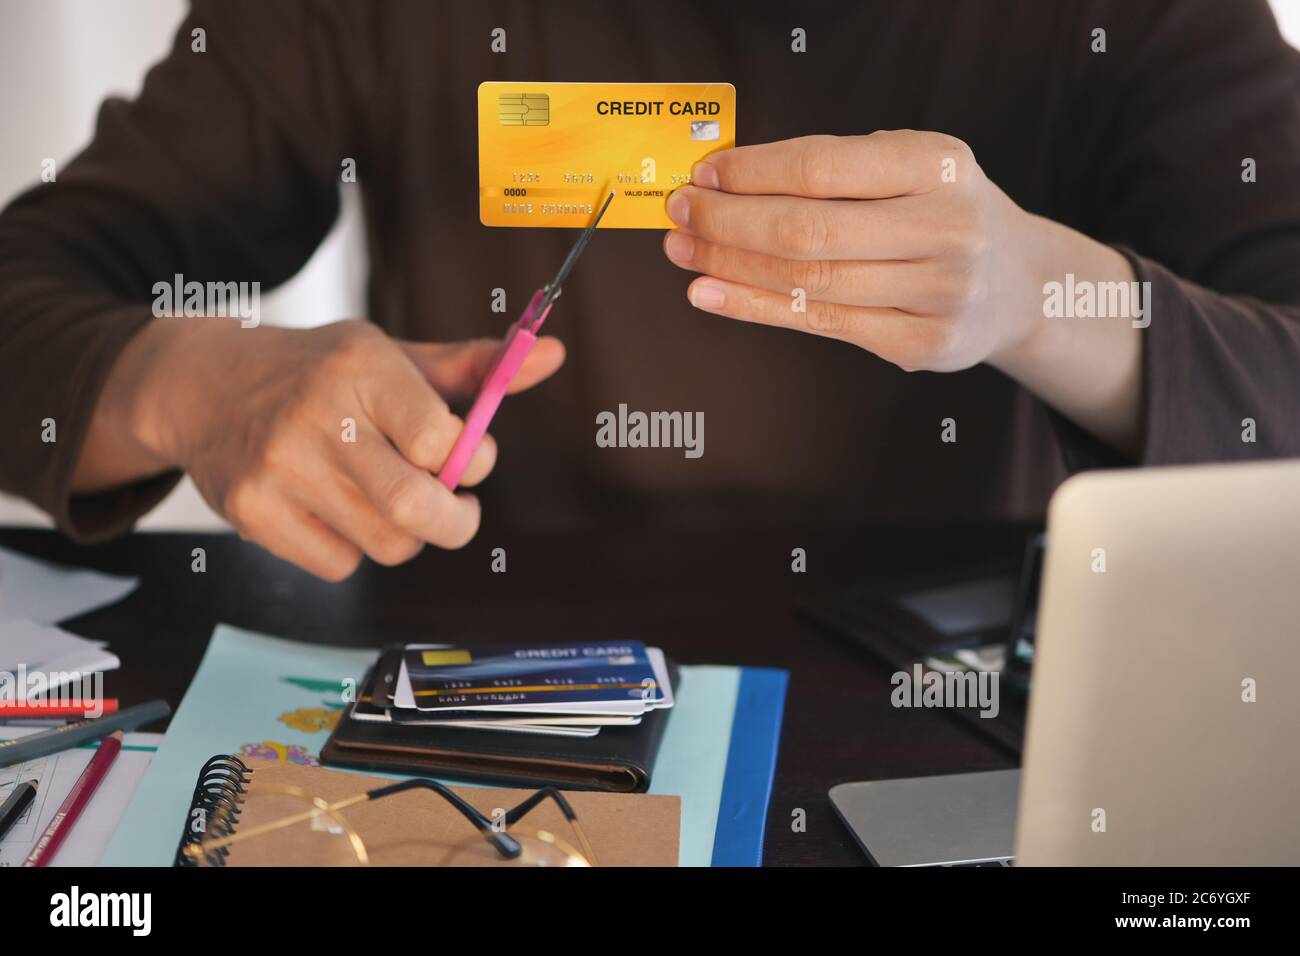 Mann Hände verwenden Schere Kreditkarten zu schneiden, Konzept für die Auszahlung Schulden aussteigen, aufhören mit Kreditkarten am Schreibtisch, konzentrieren sich auf Kreditkarte flach DOF Stockfoto